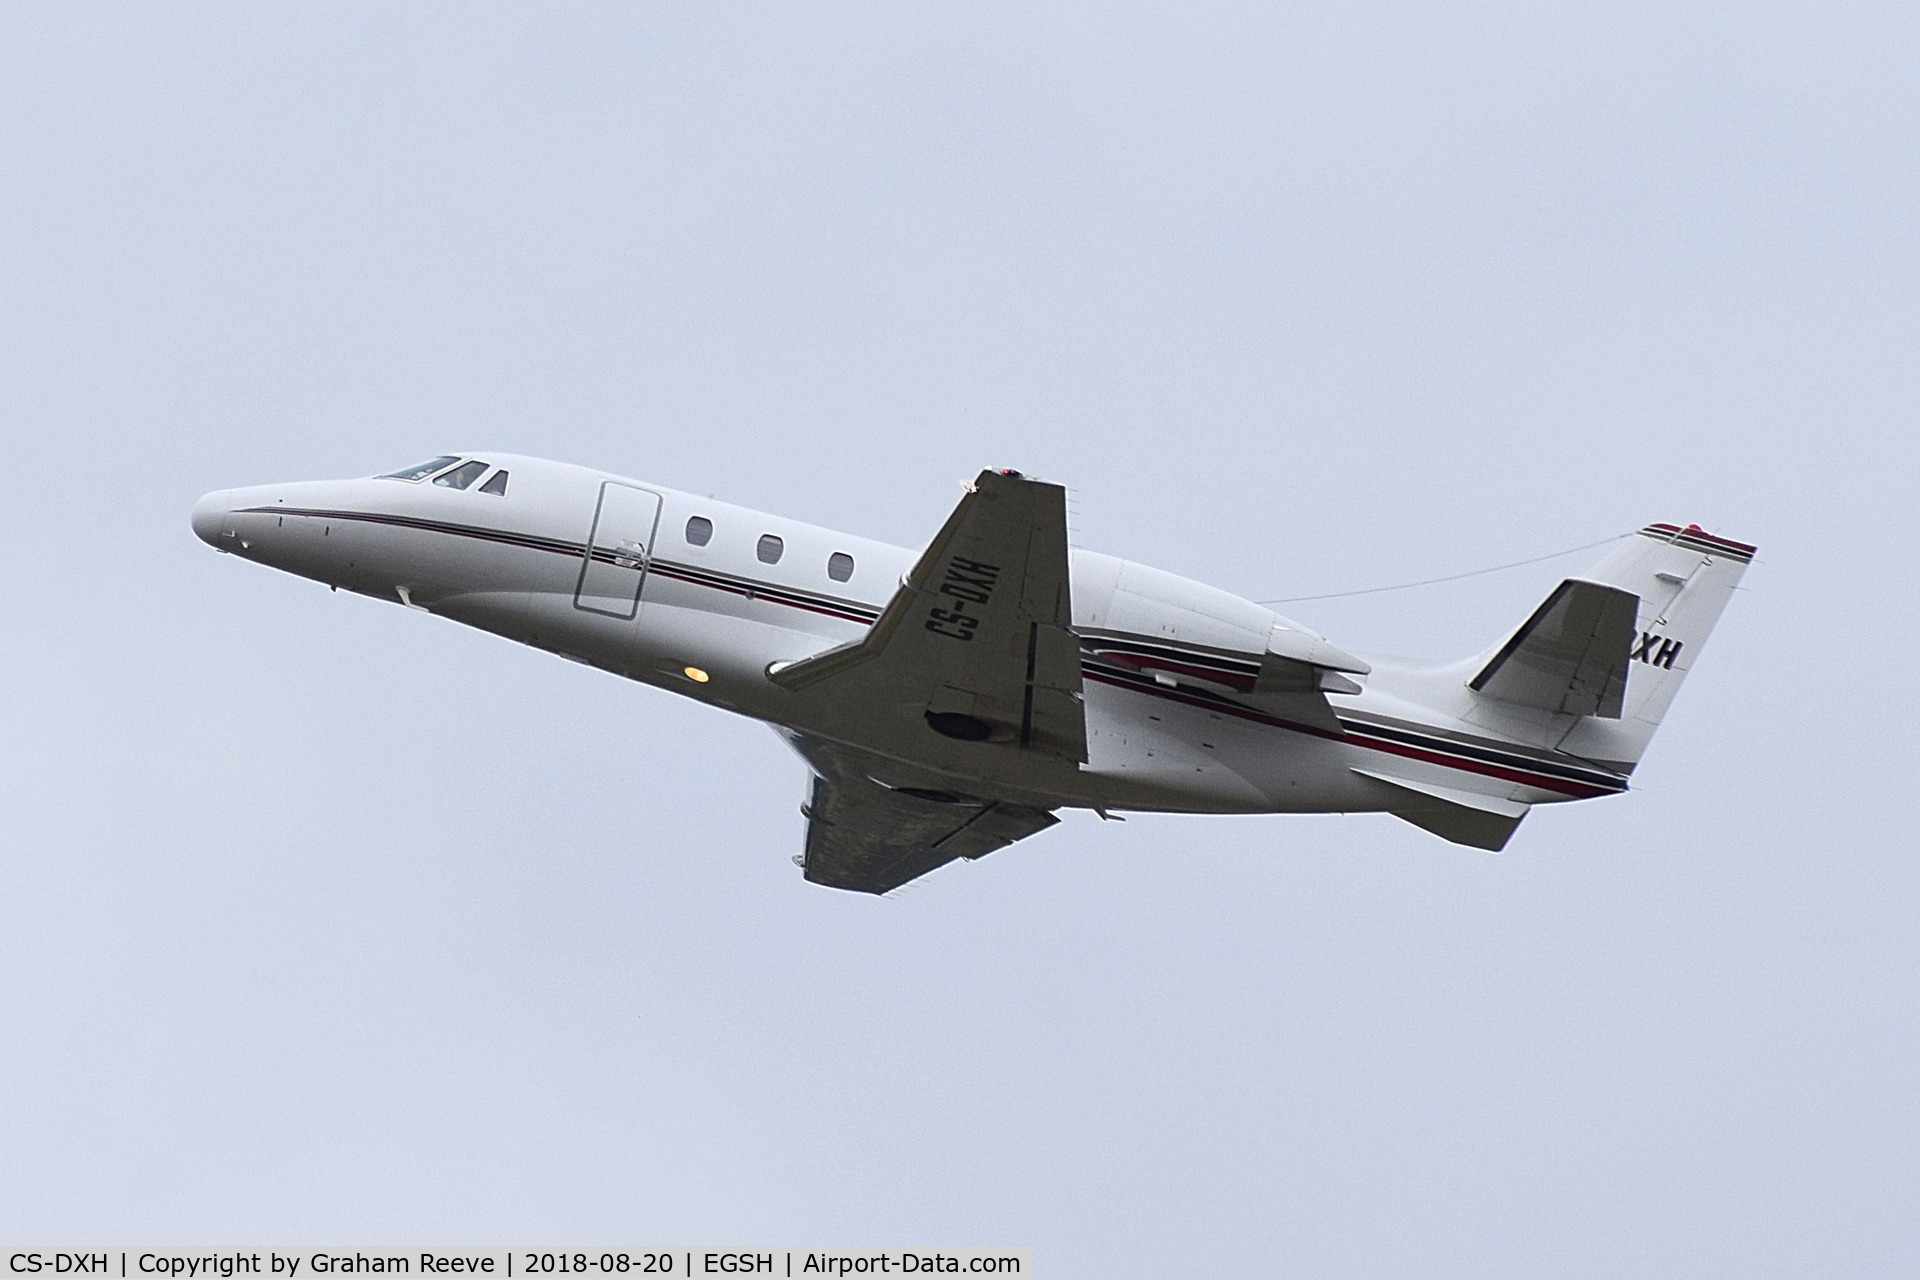 CS-DXH, 2006 Cessna Citation XLS C/N 560-5615, Departing from Norwich.